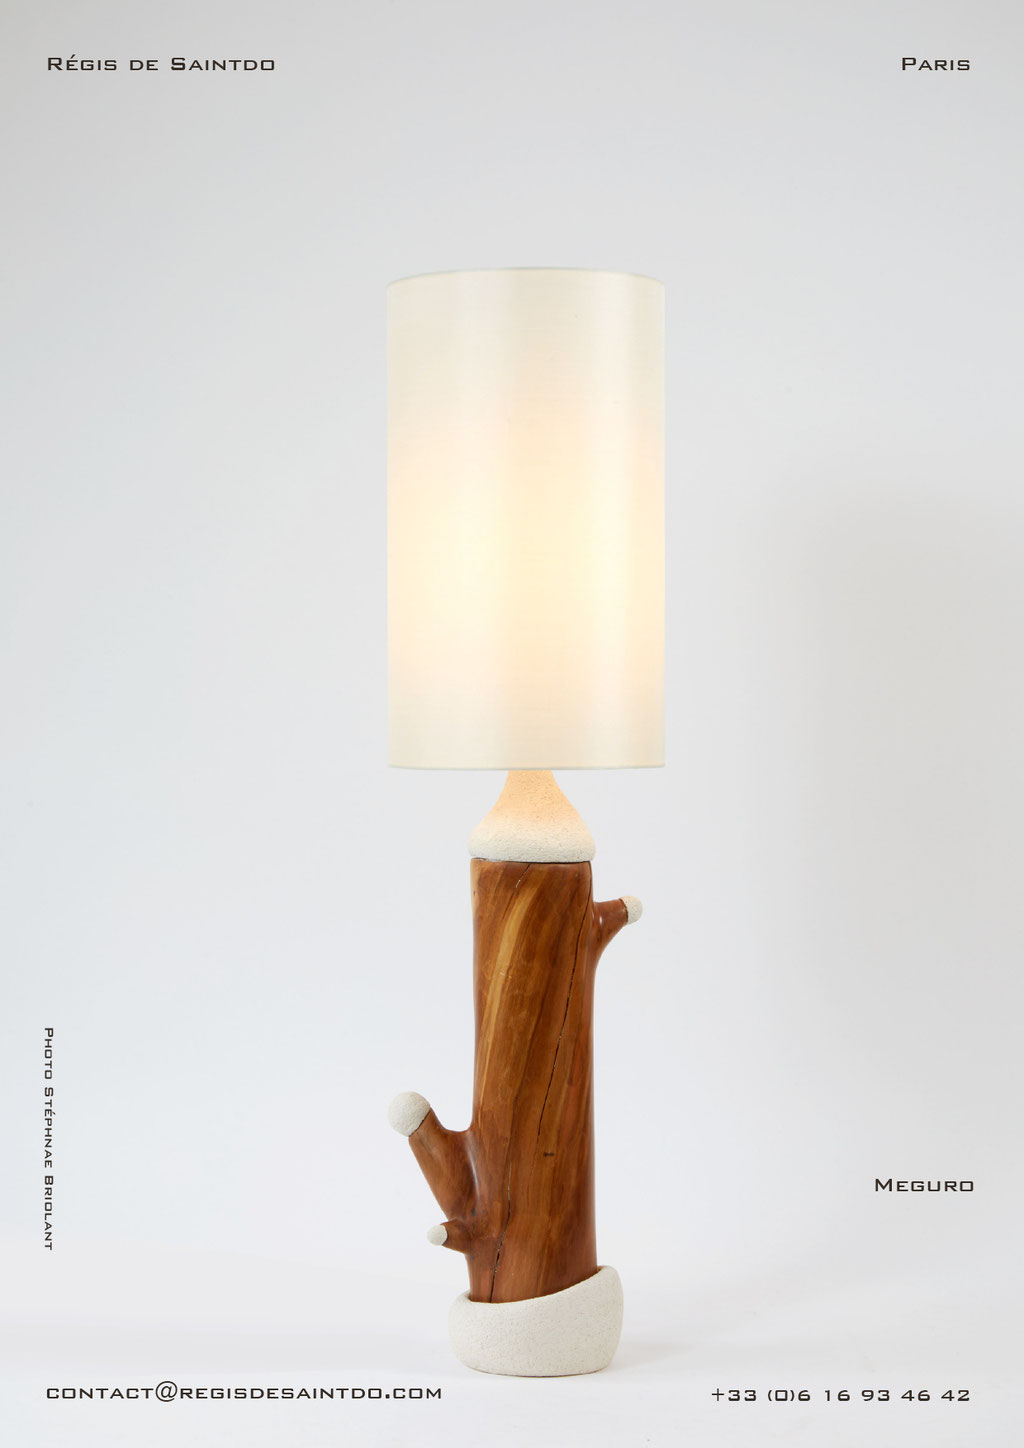 Lamp Meguro cherish tree & ceramic, hand made-one off